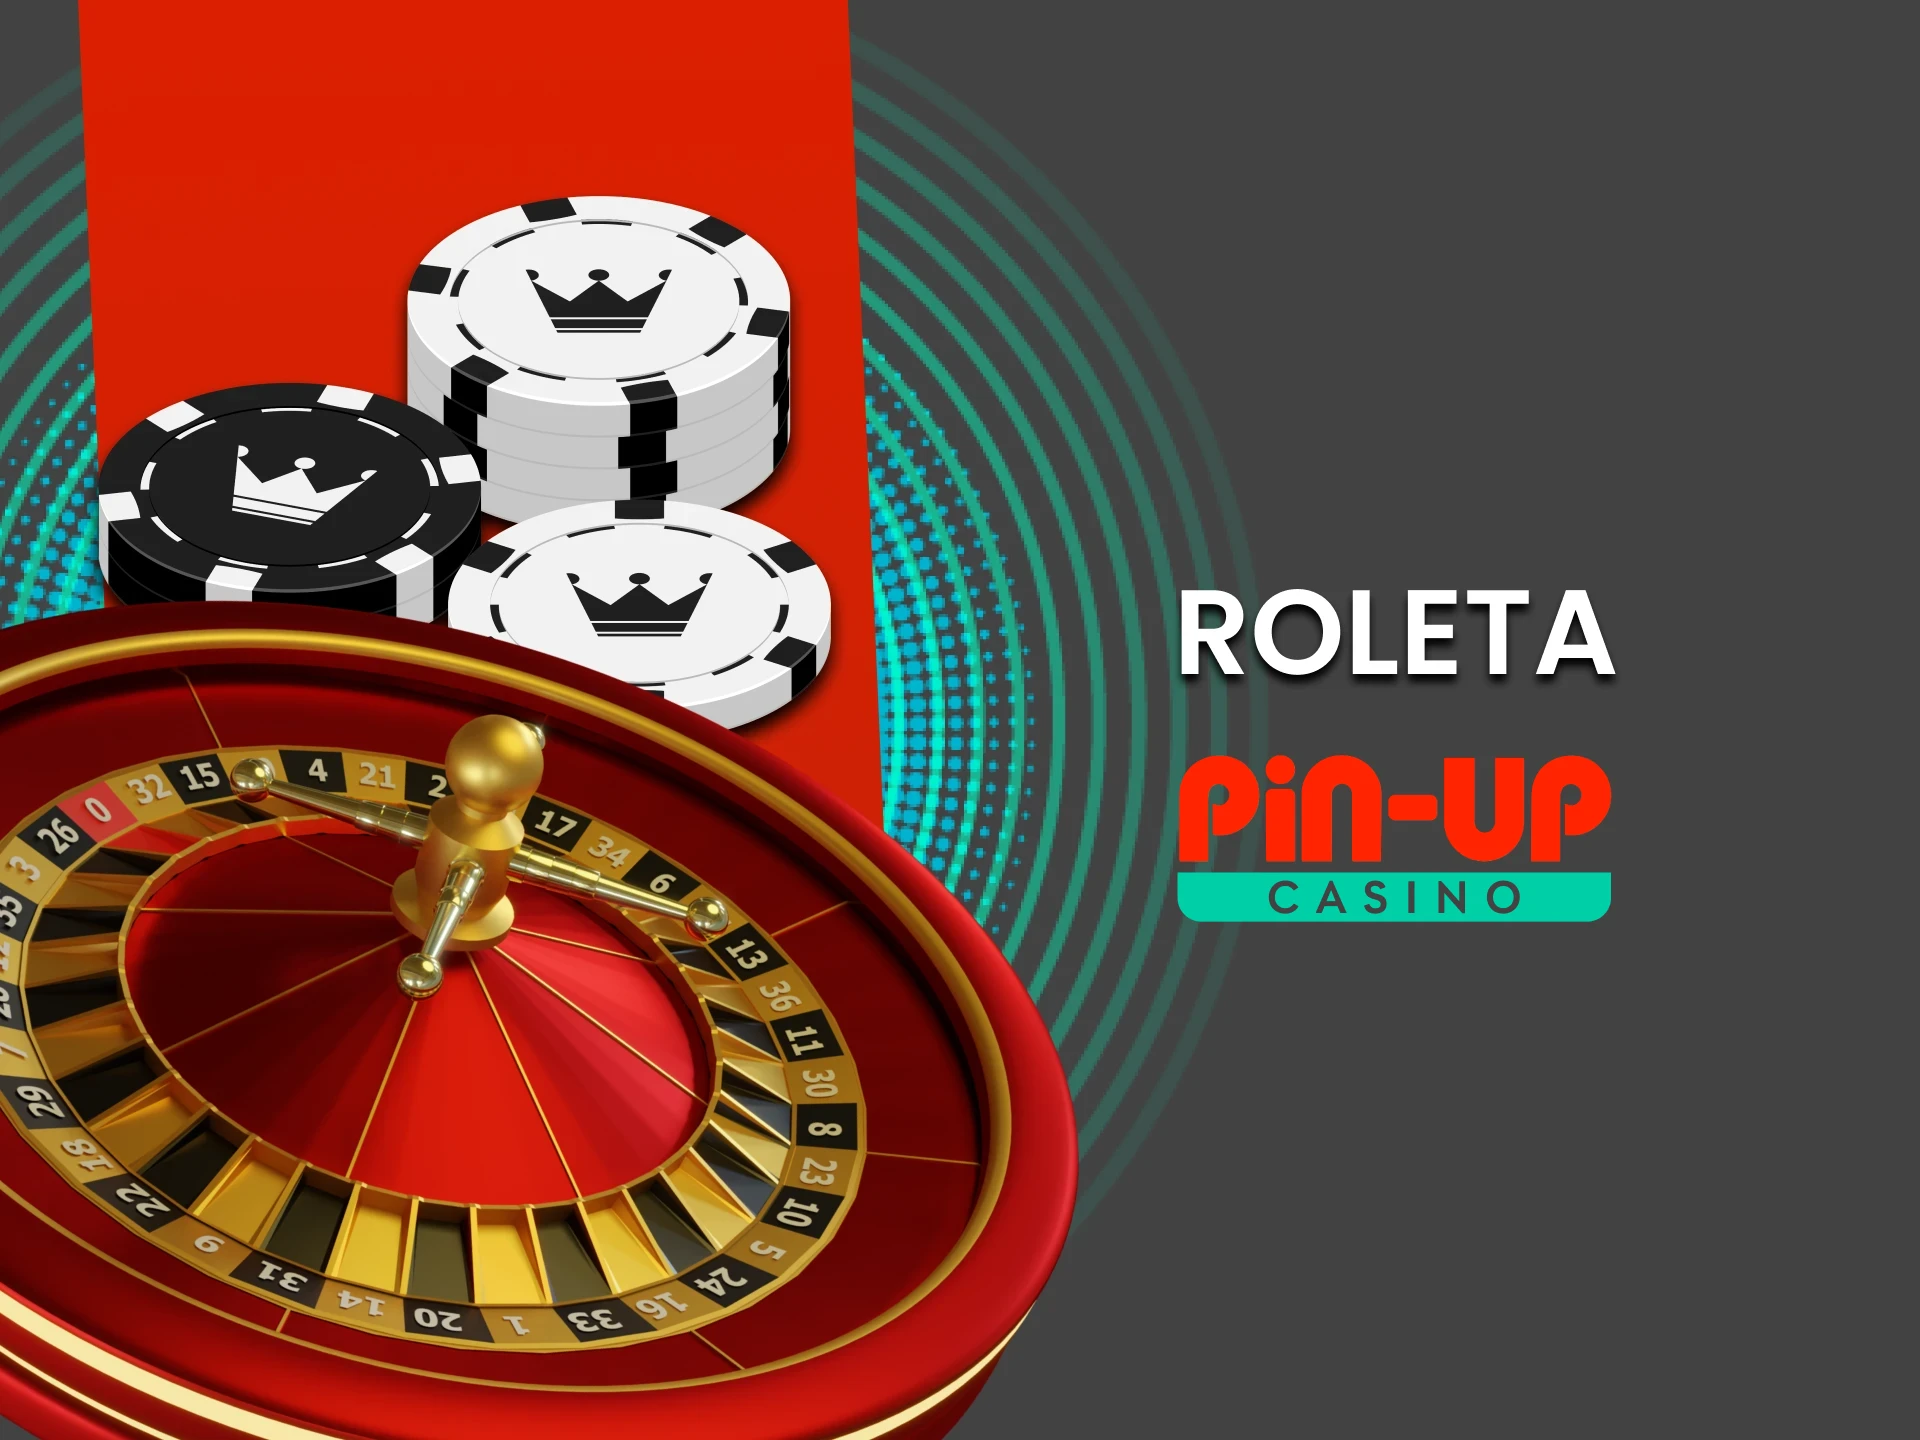 Para jogos de cassino no Pin Up, escolha Roleta.